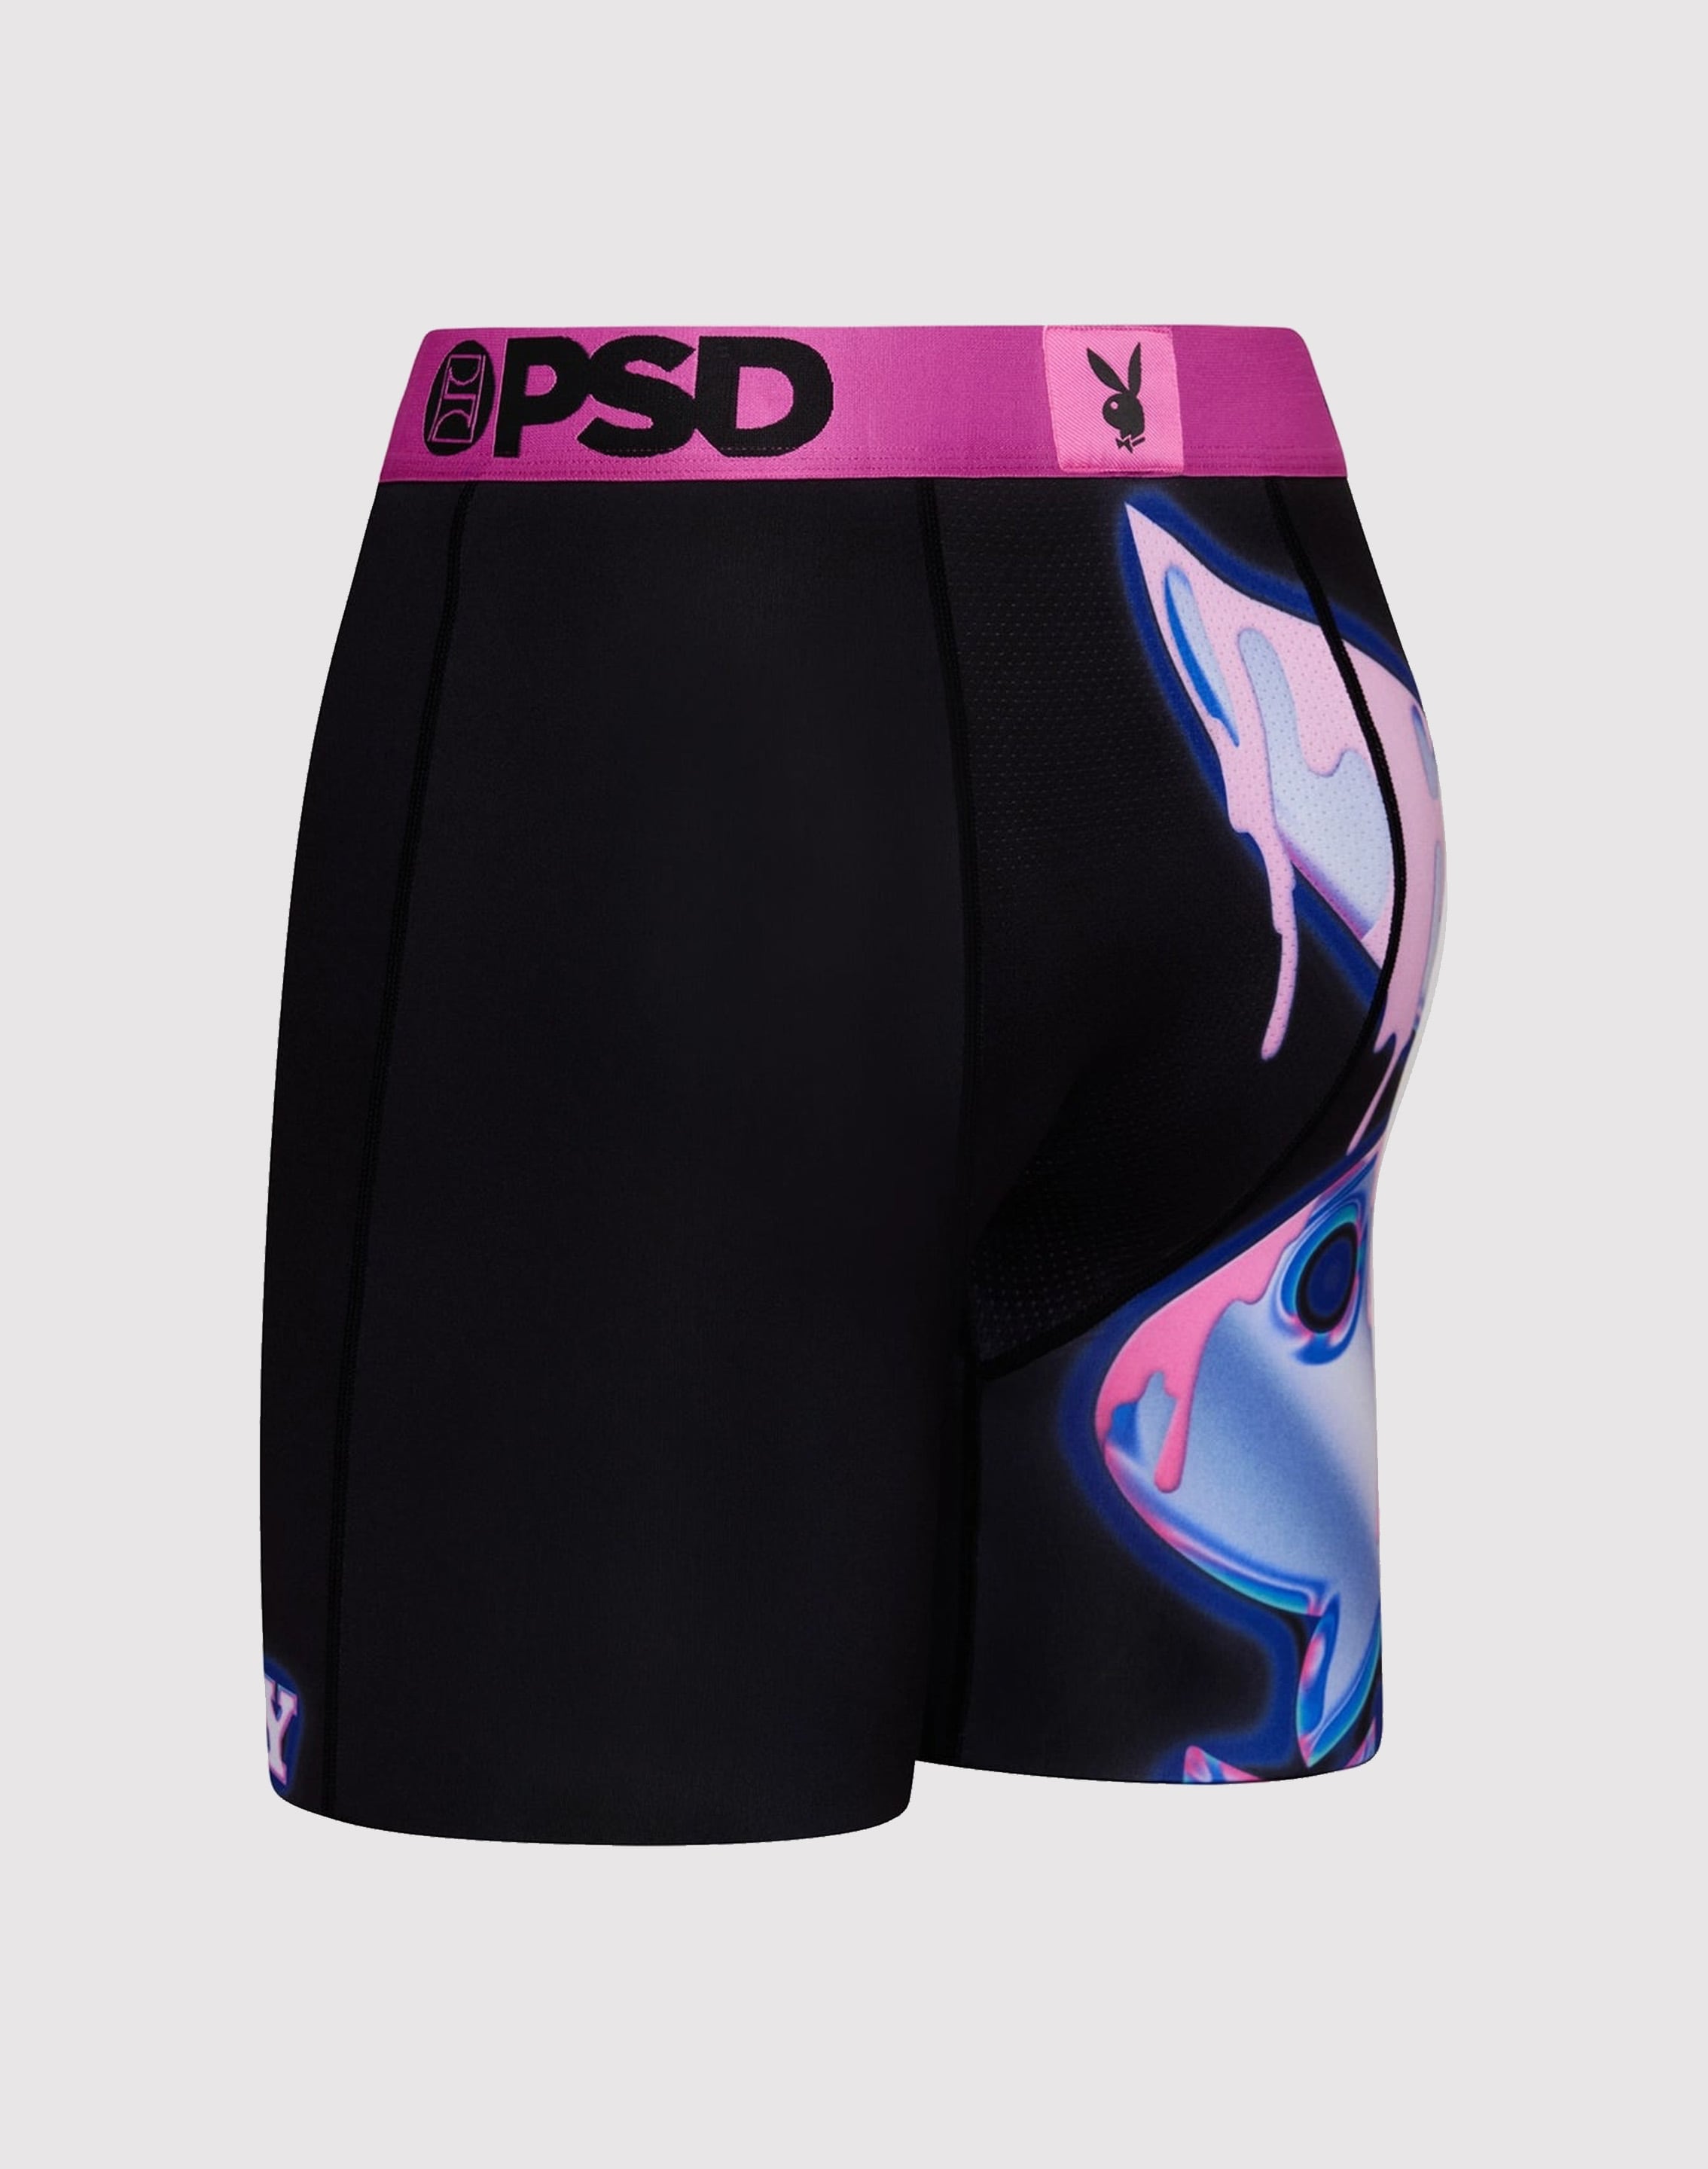 Psd Underwear Playboy Chromed Drip Boxer Briefs